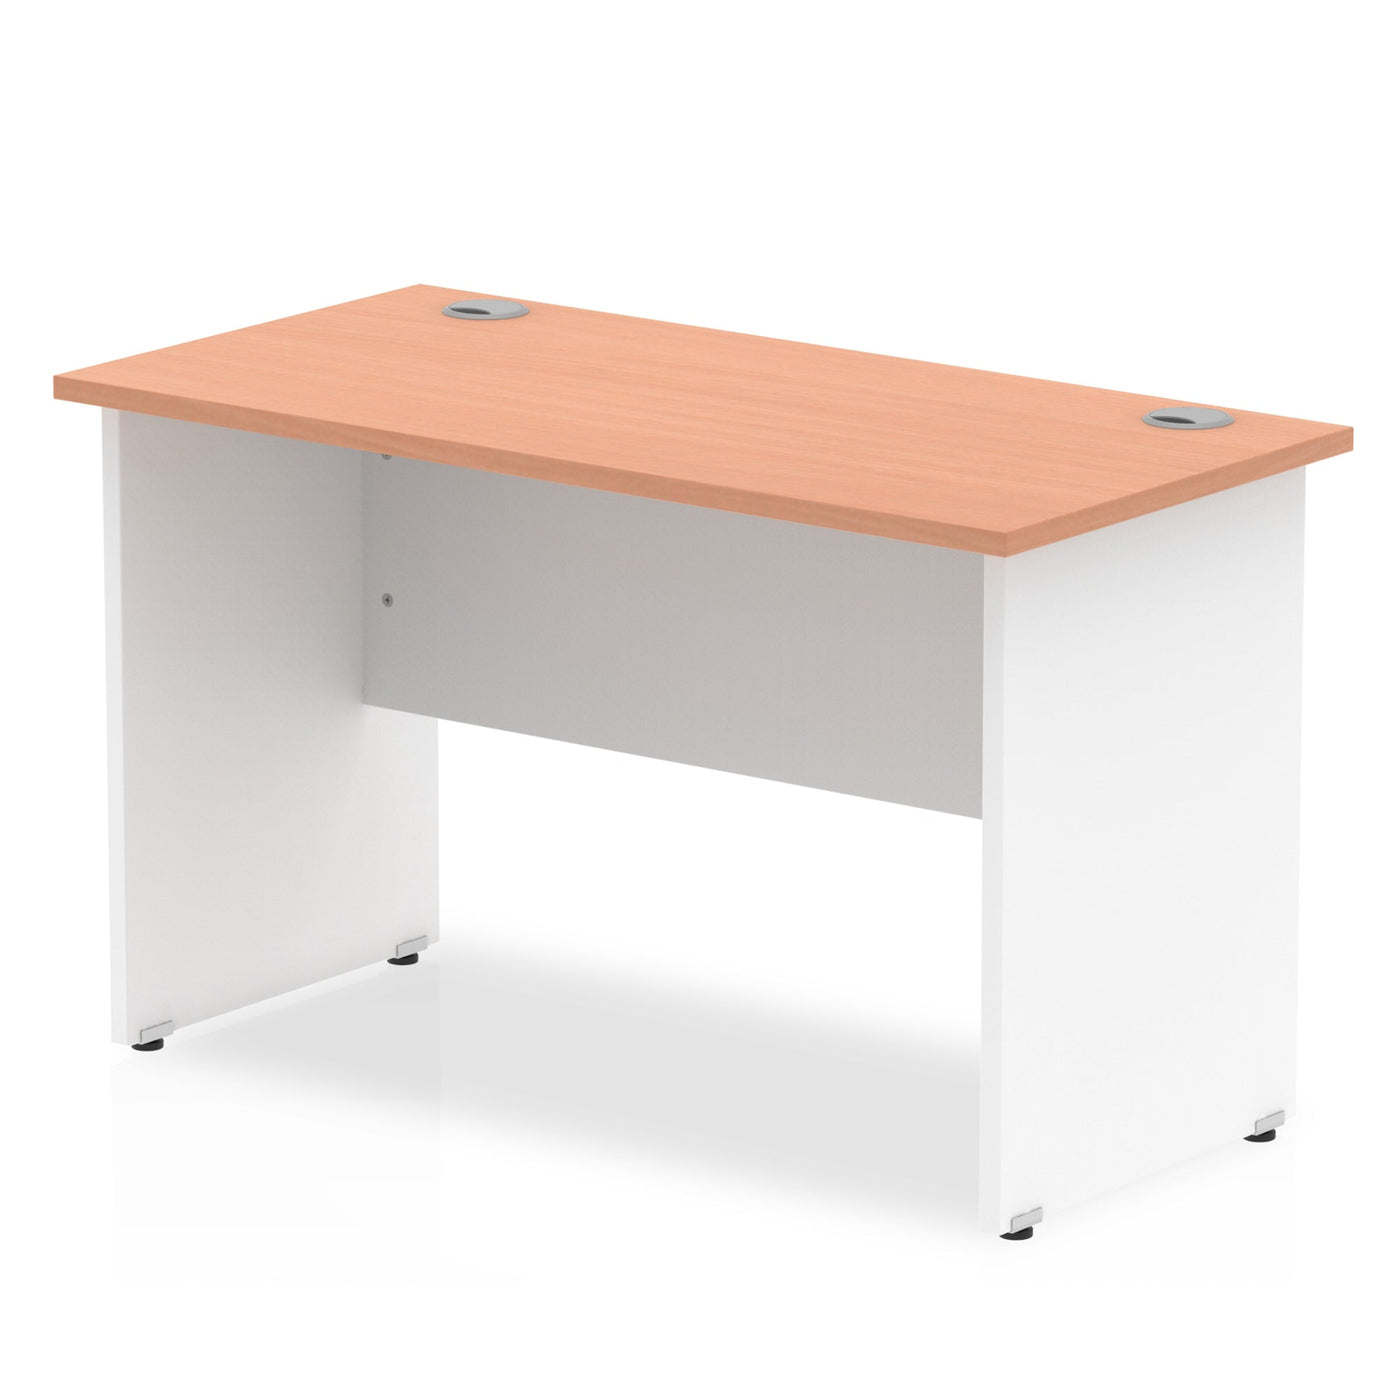 Impulse 1000mm Slimline Desk | Panel End Desk | Home Office Furniture | Smart Storage Desk | Homework Desk | Work From Home Desk  | Wooden Desk